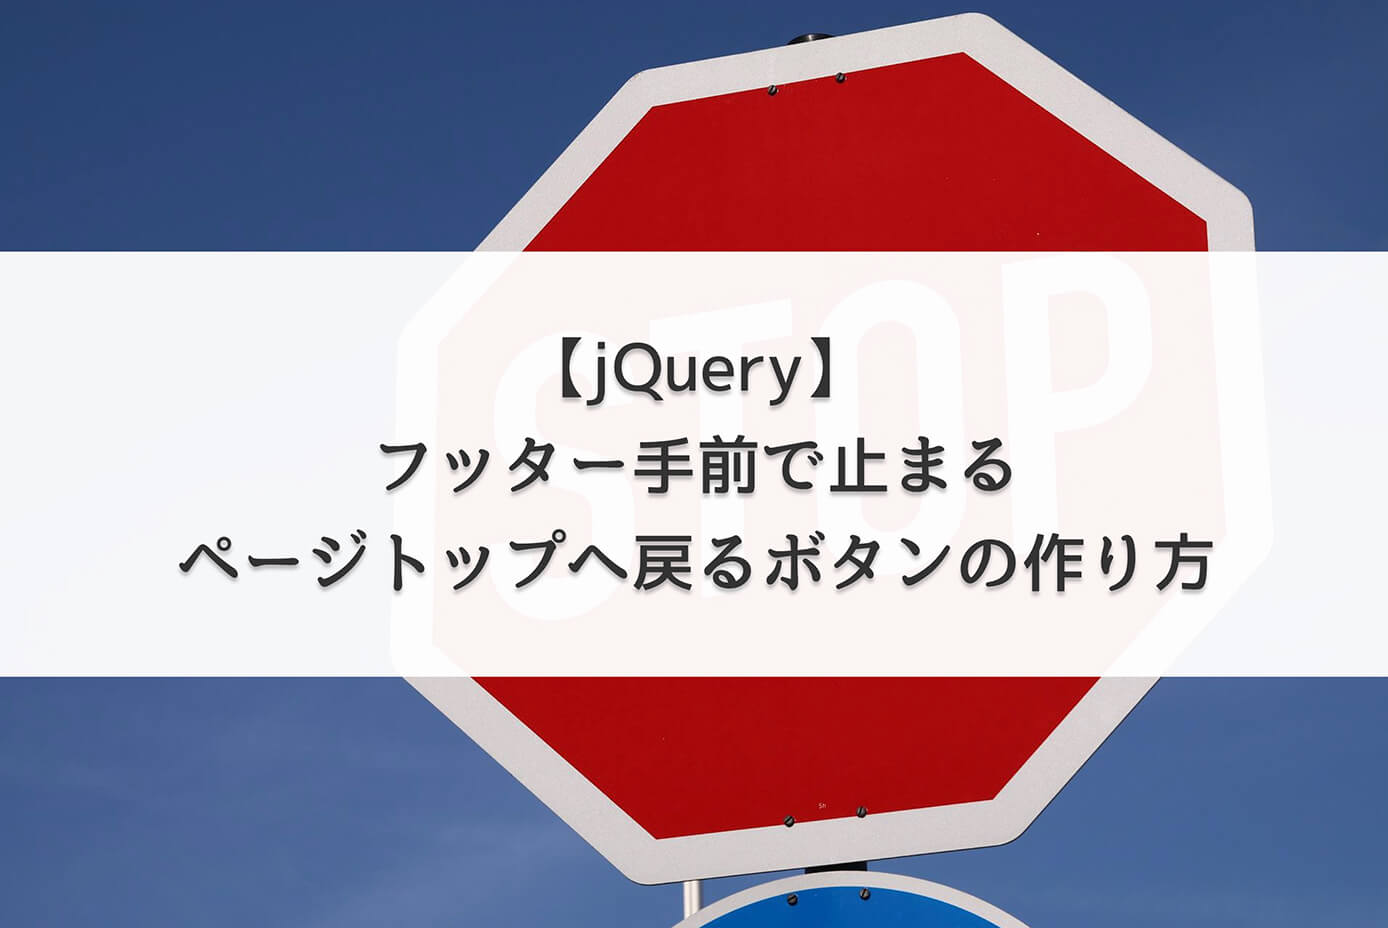 【jQuery】フッター手前で止まるページトップへ戻るボタンの作り方